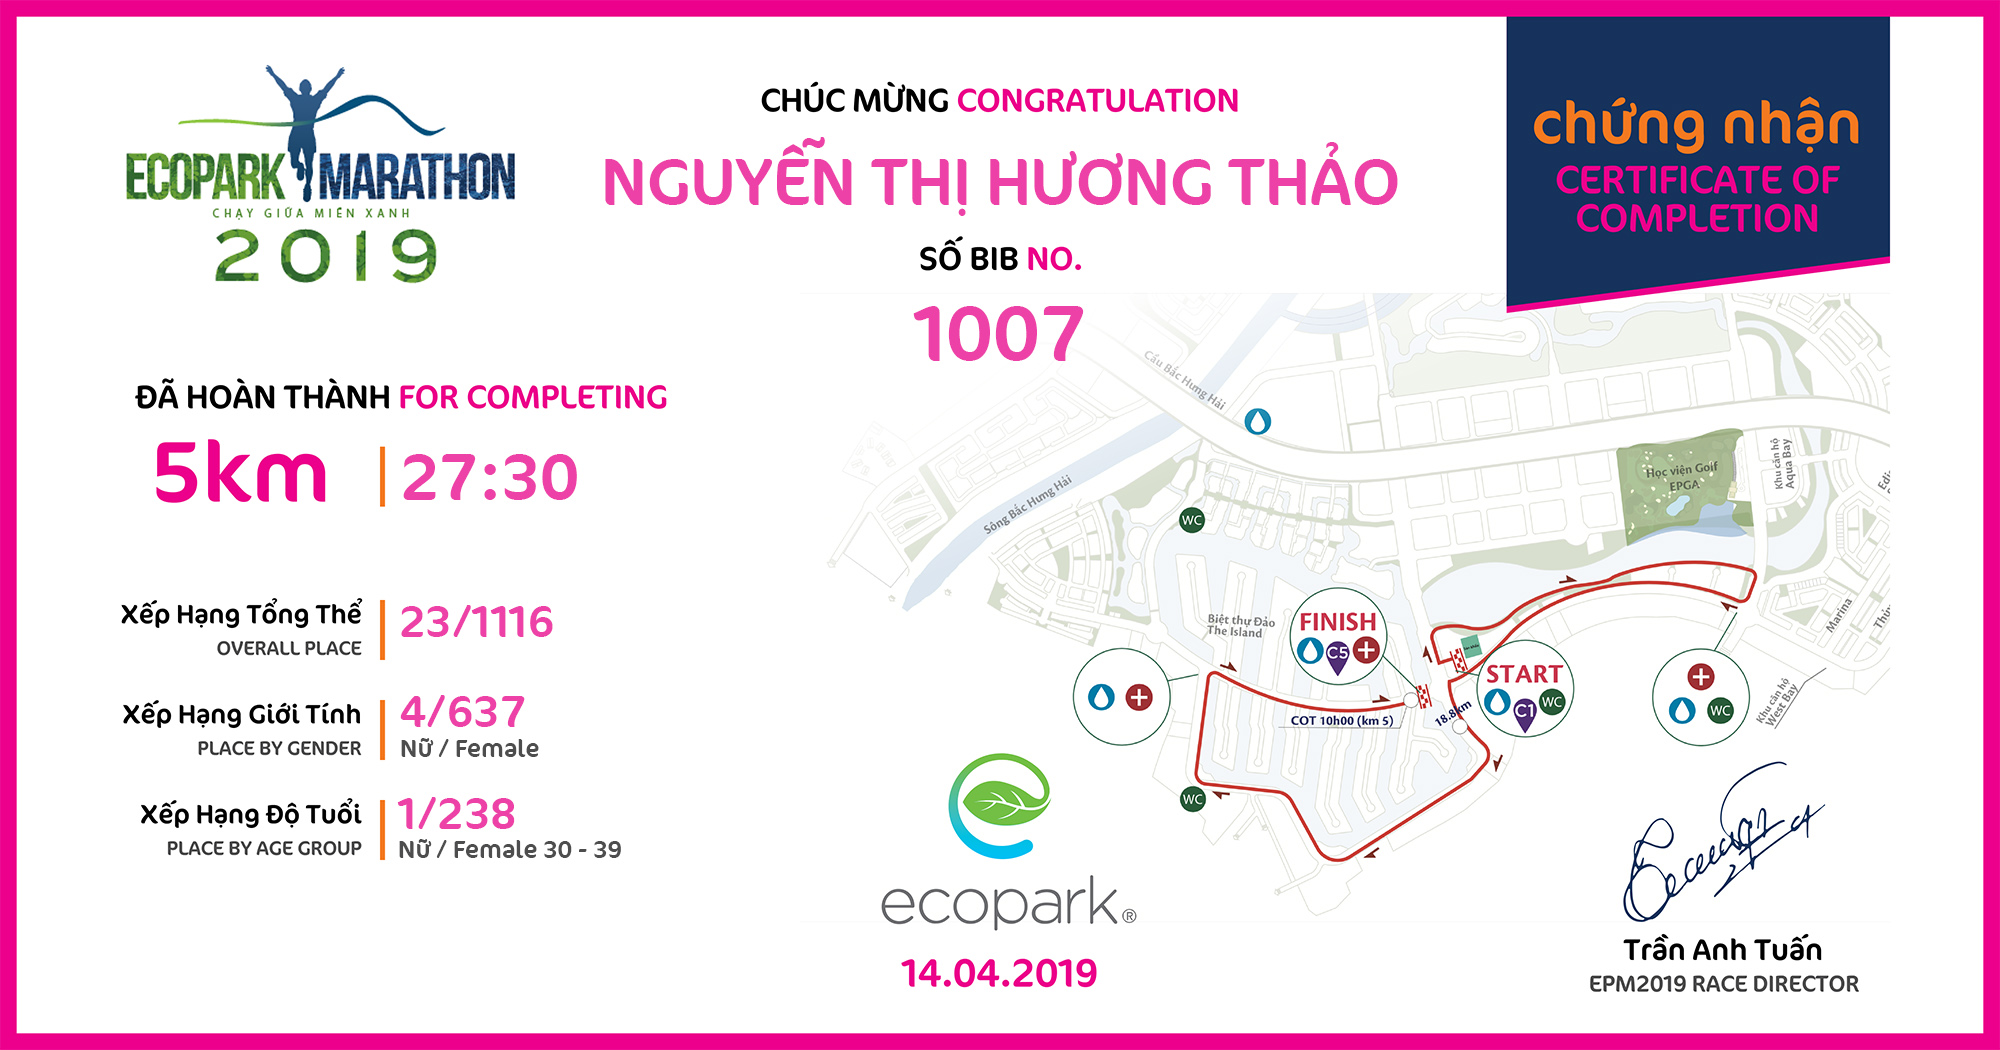 1007 - Nguyễn Thị Hương Thảo